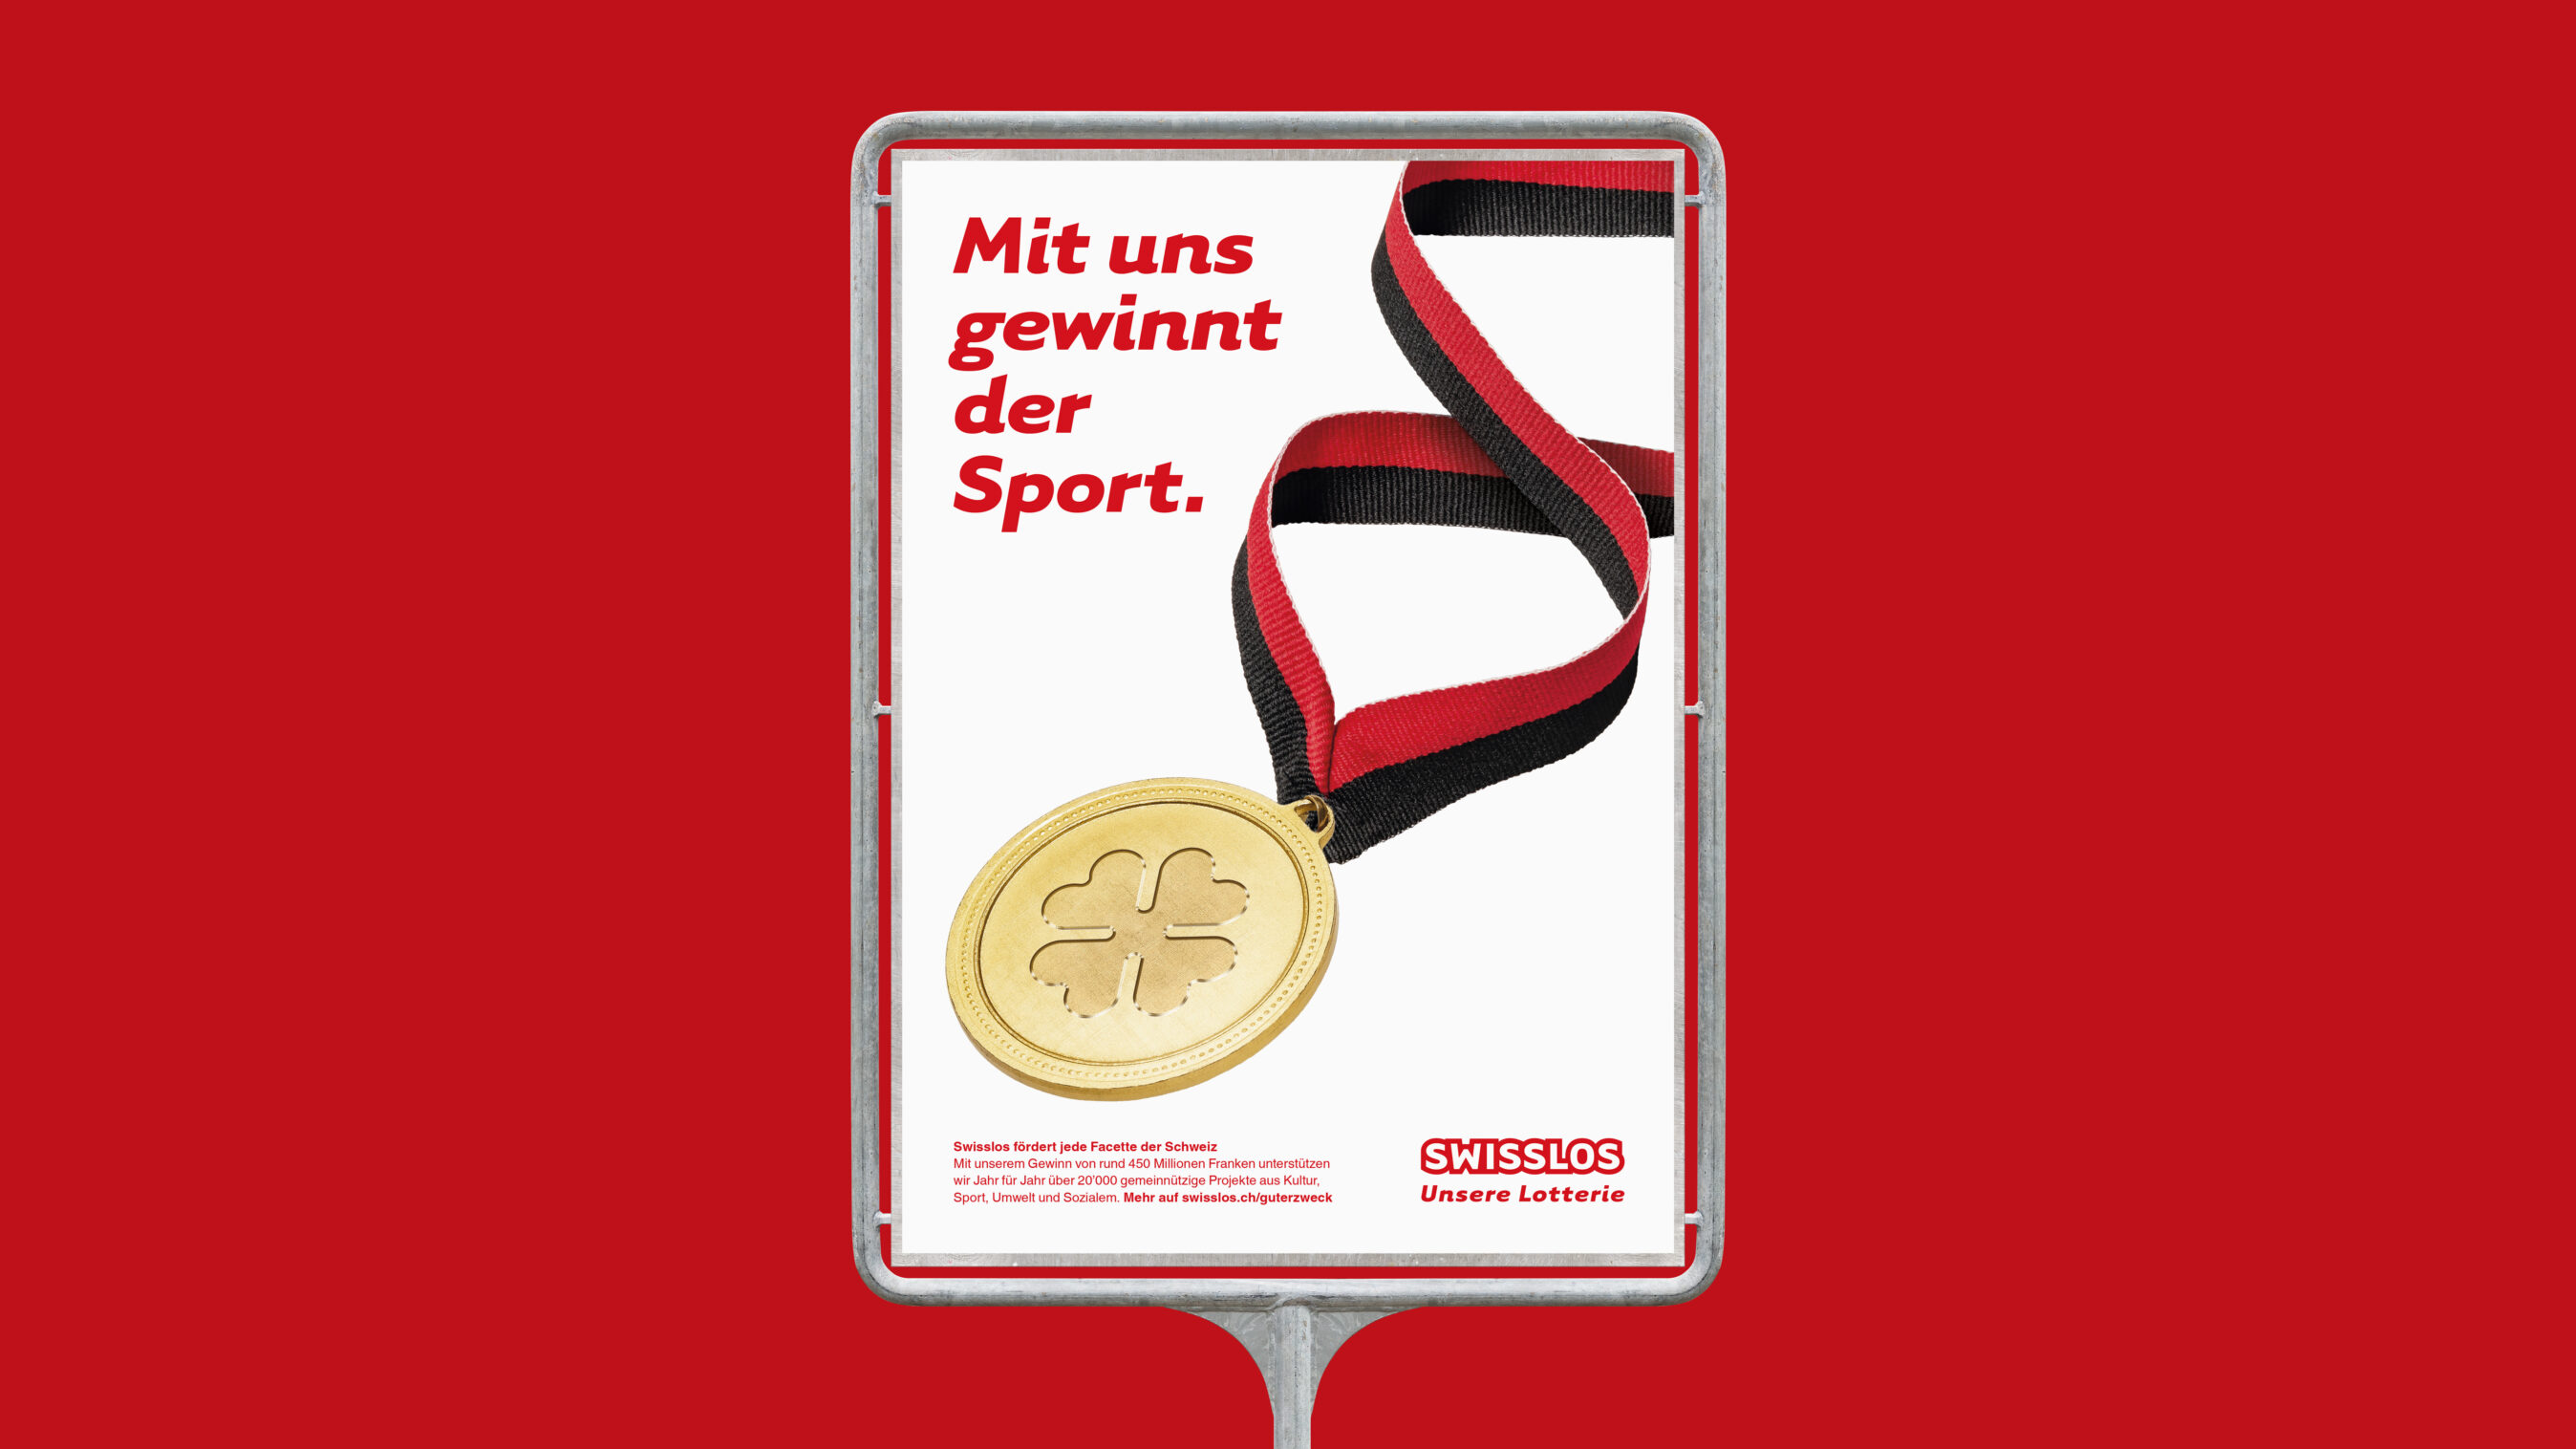 Plakatgestaltung Swisslos PR-Kampagne Bereich Sport.